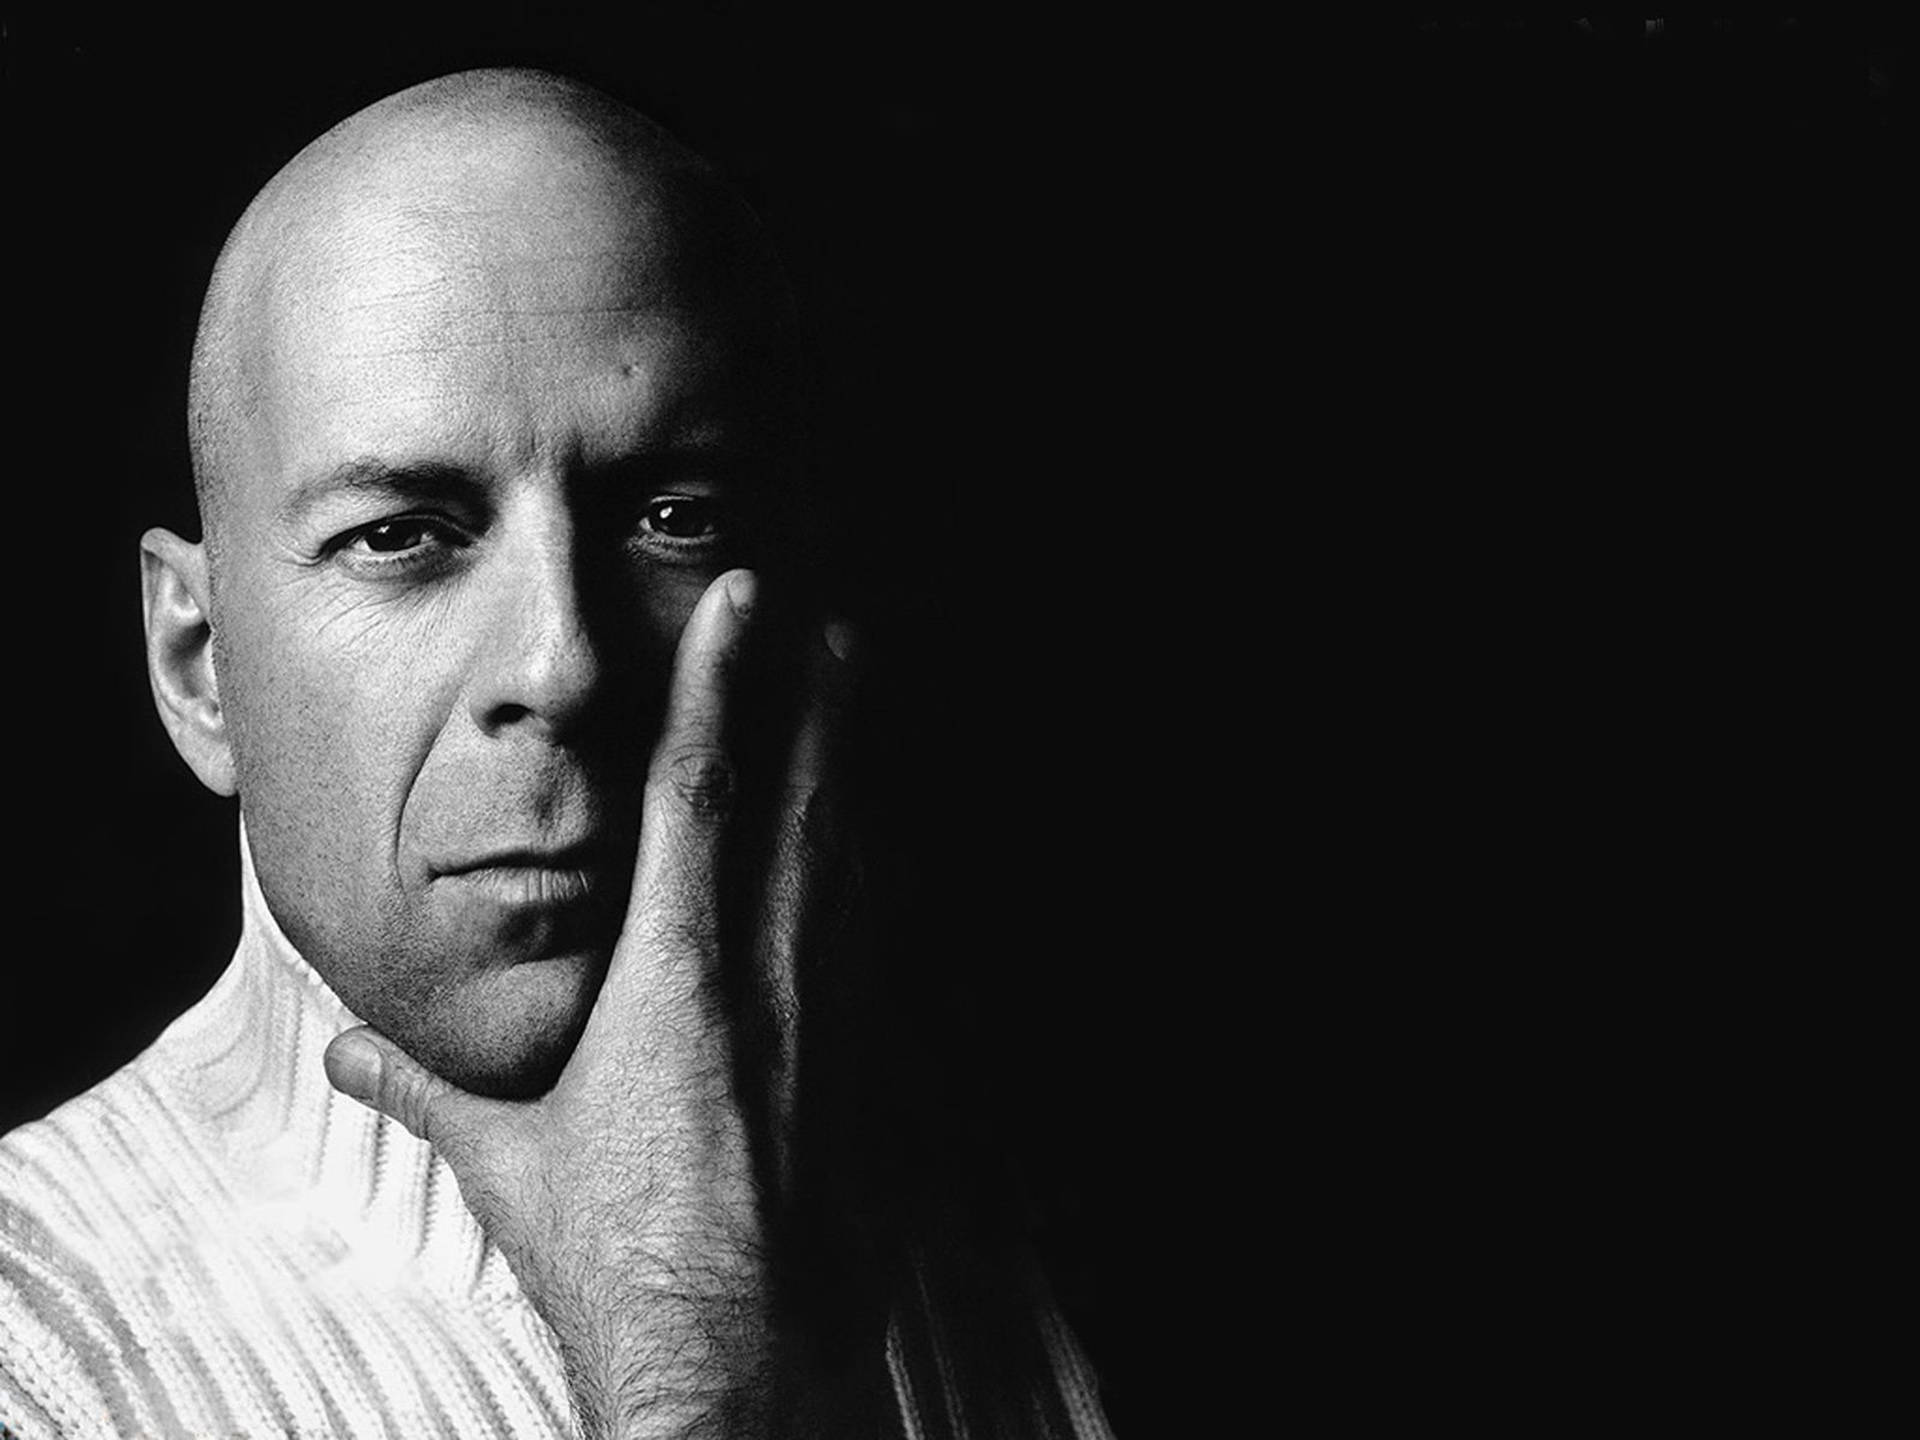 Bruce Willis Headshot Background